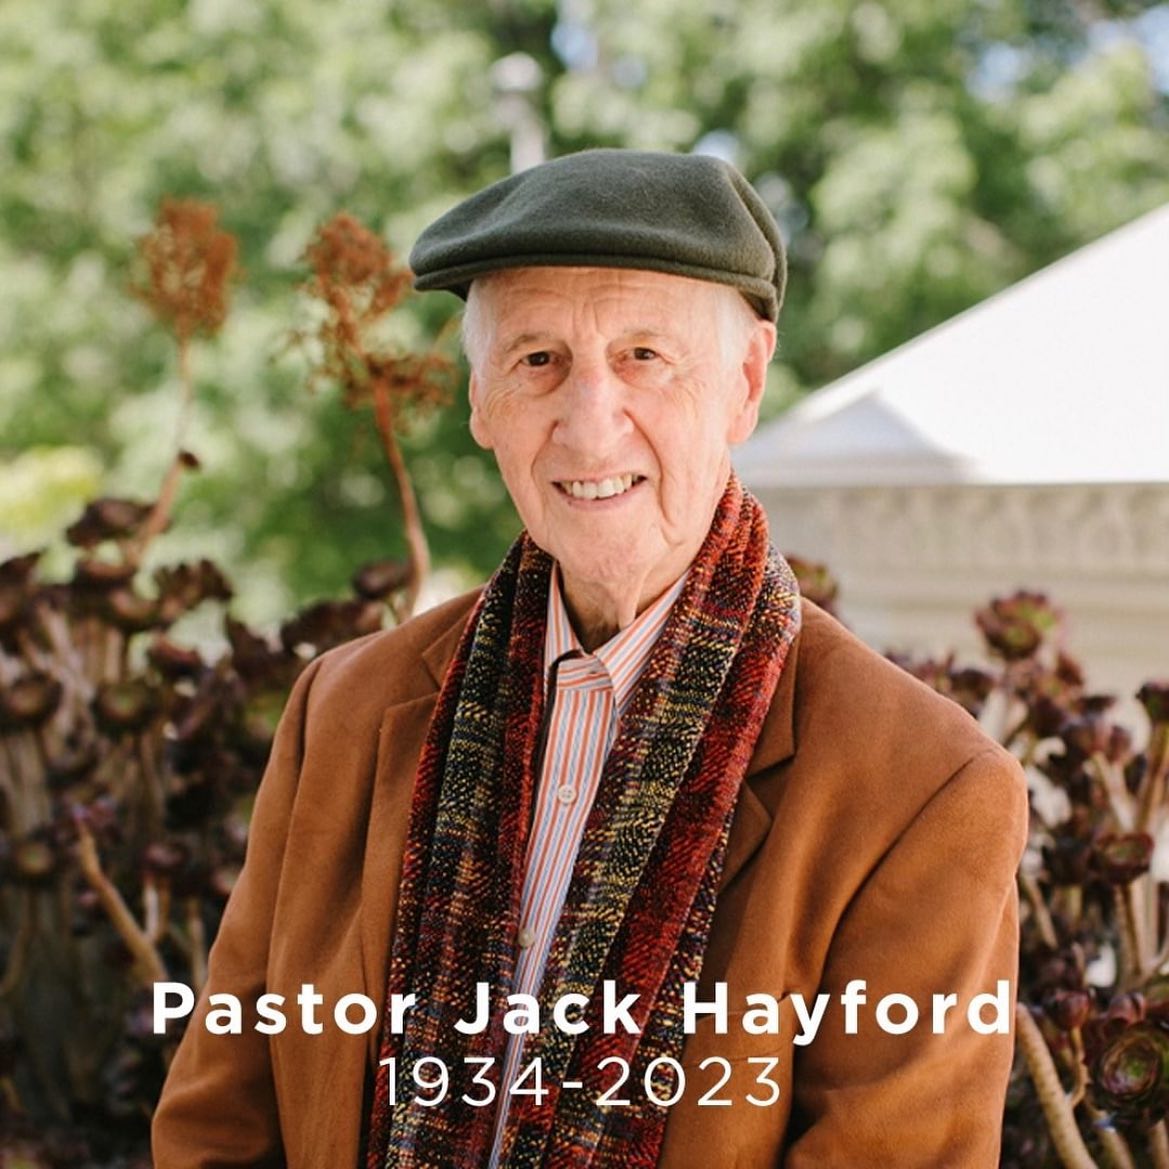 In memoriam Jack Hayford